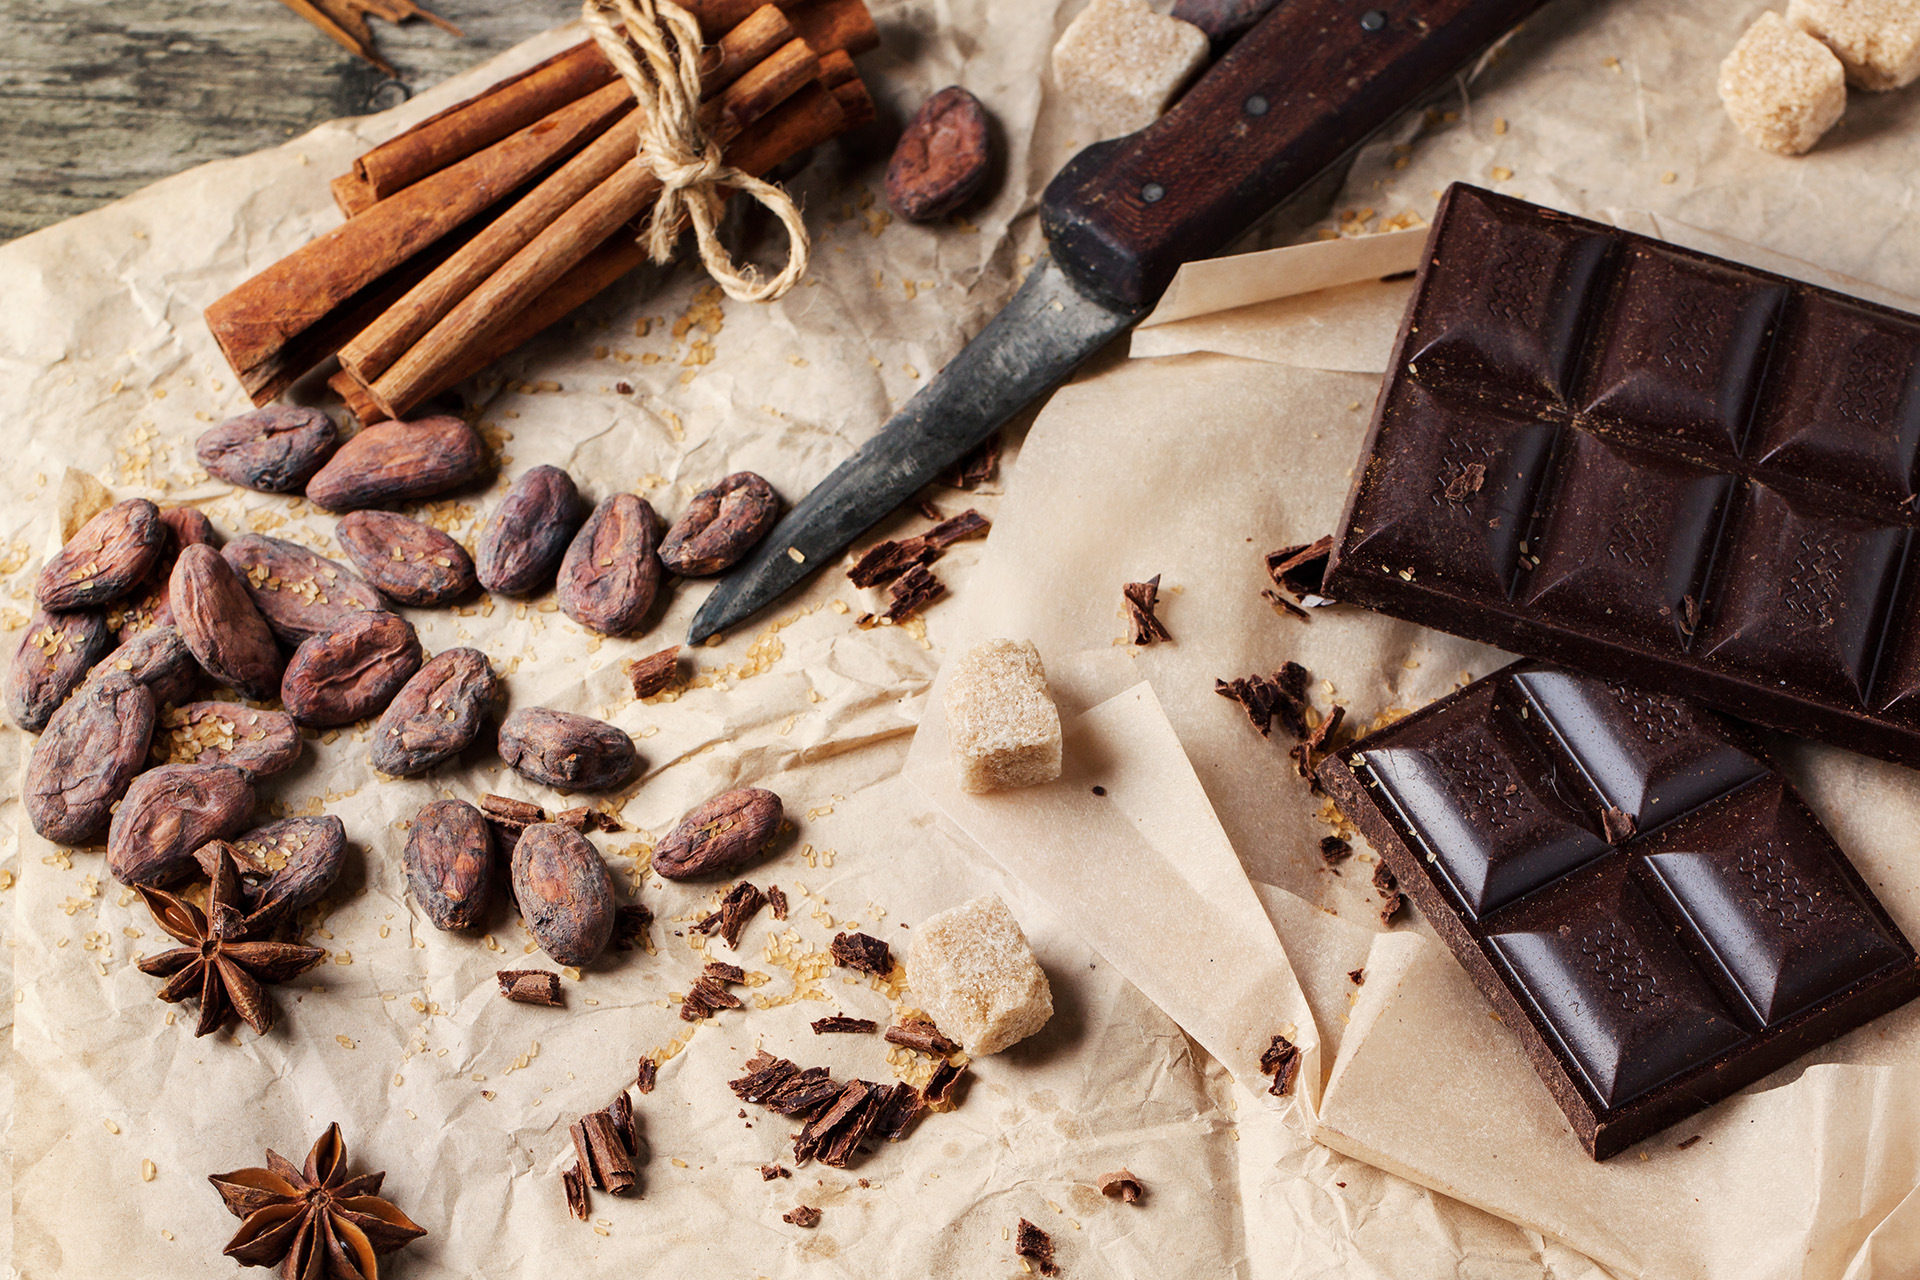 Il cioccolato fondente può essere un'alternativa sana alla classica fetta biscottata